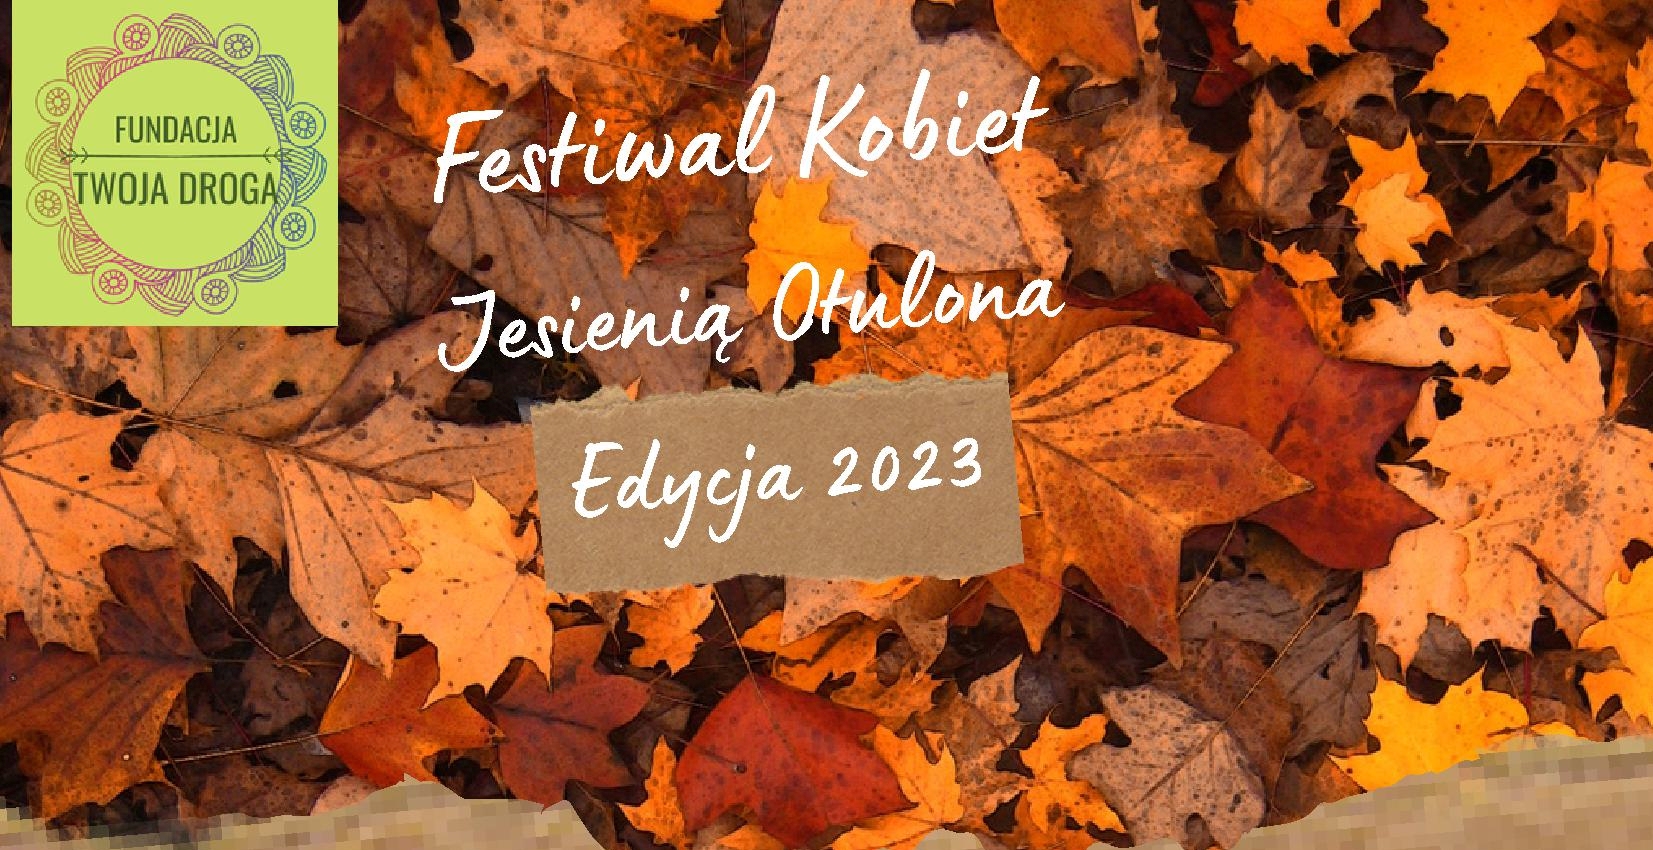 You are currently viewing Festiwal Kobiet z Fundacją Twoja Droga